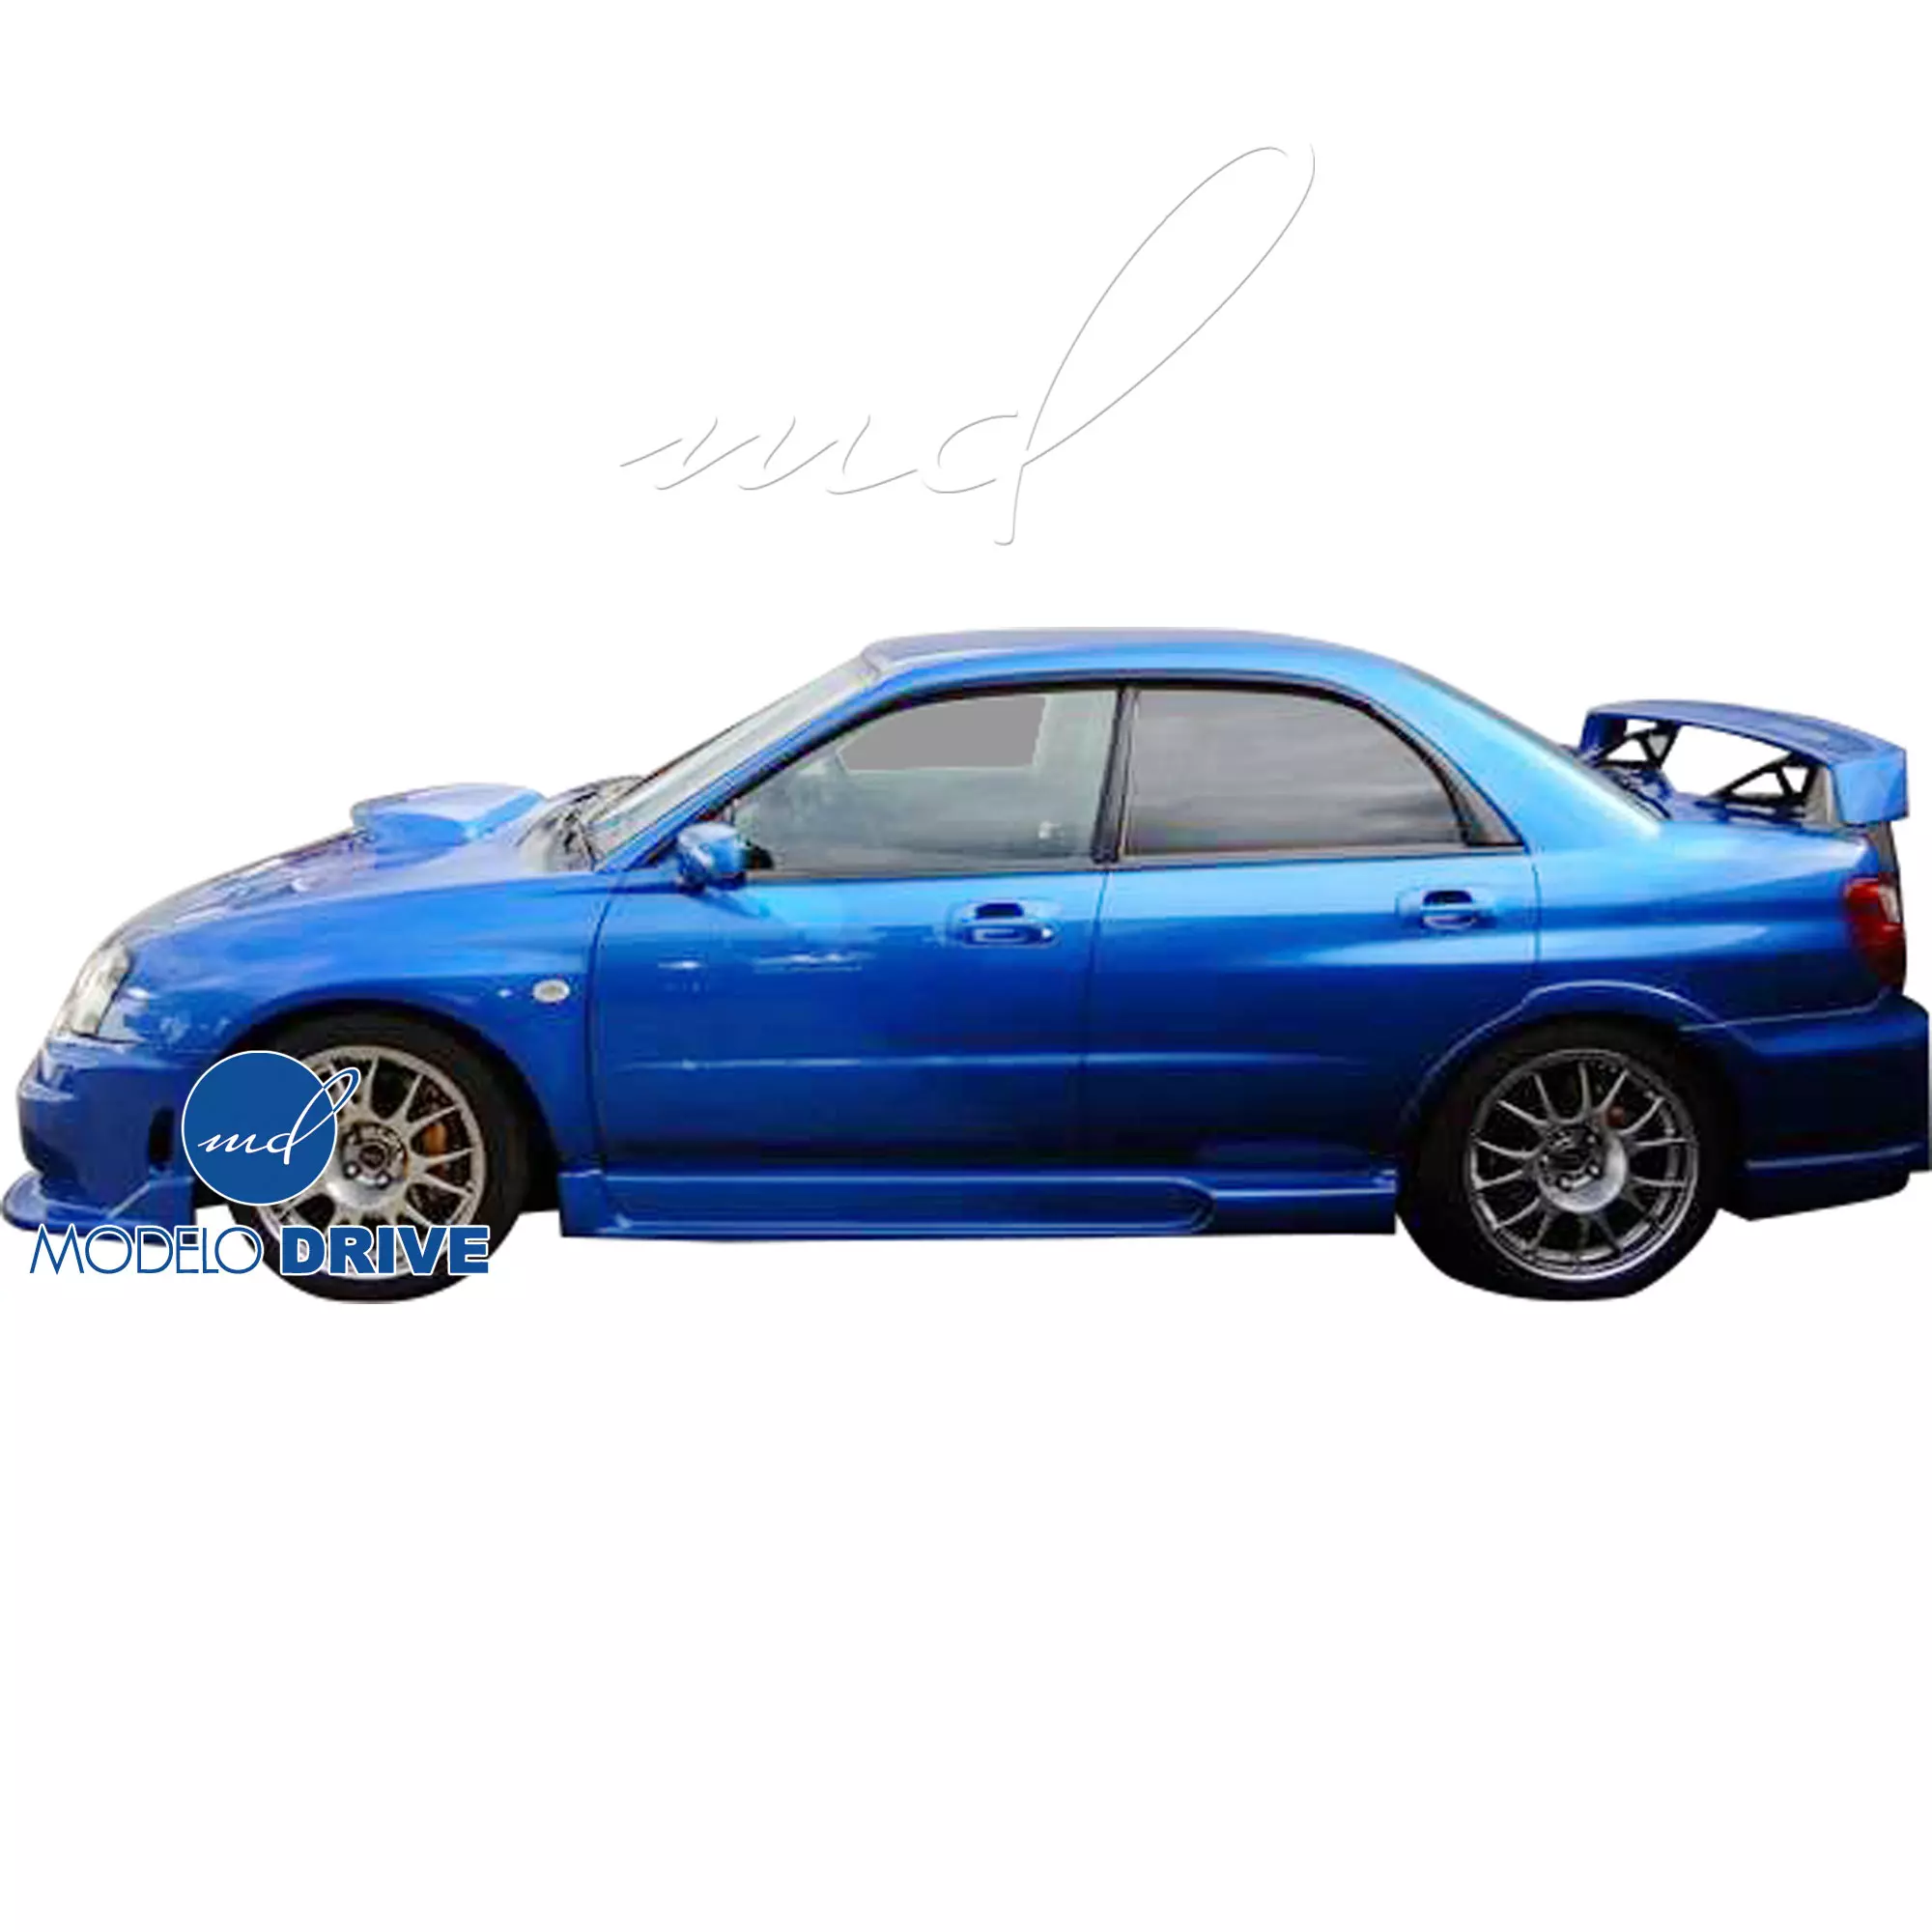 ModeloDrive FRP ING Body Kit 4pc > Subaru WRX 2006-2007 > 4dr Sedan - Image 9